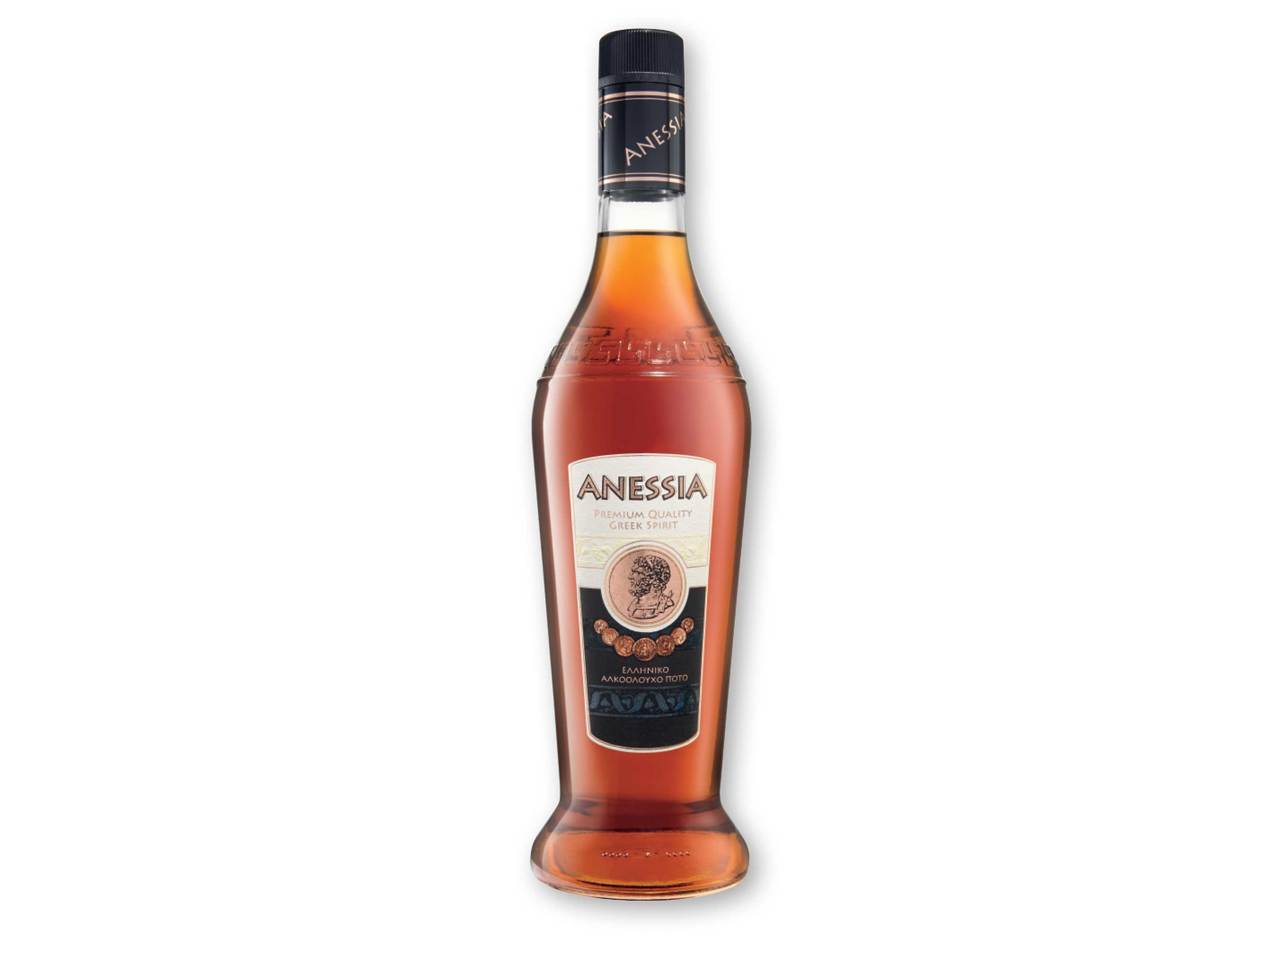 ANESSIA Premium Quality Greek Brandy